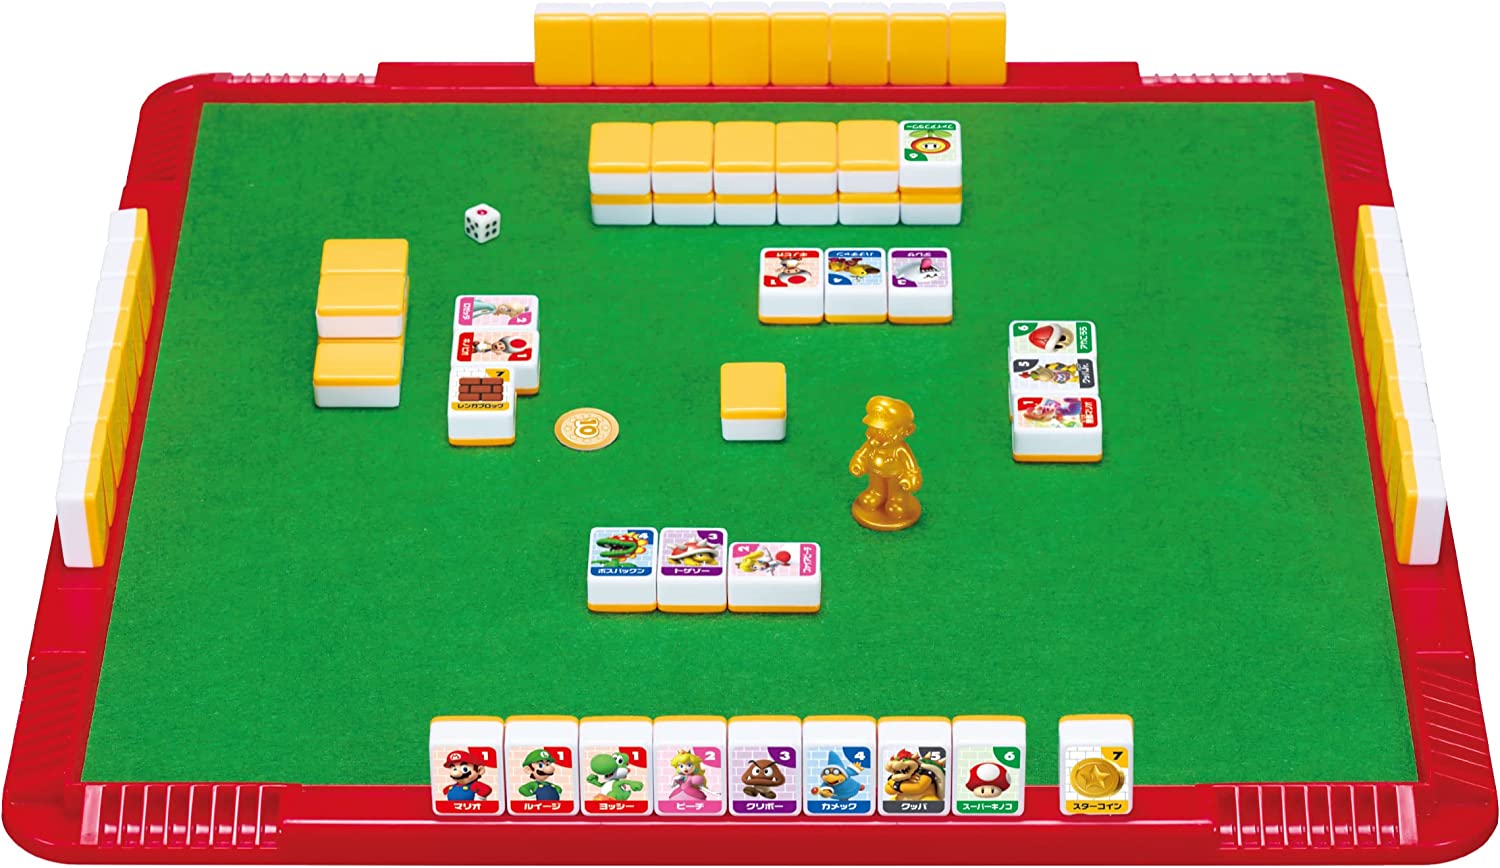 Super Mario™ LUCKY COIN GAME｜EPOCH games